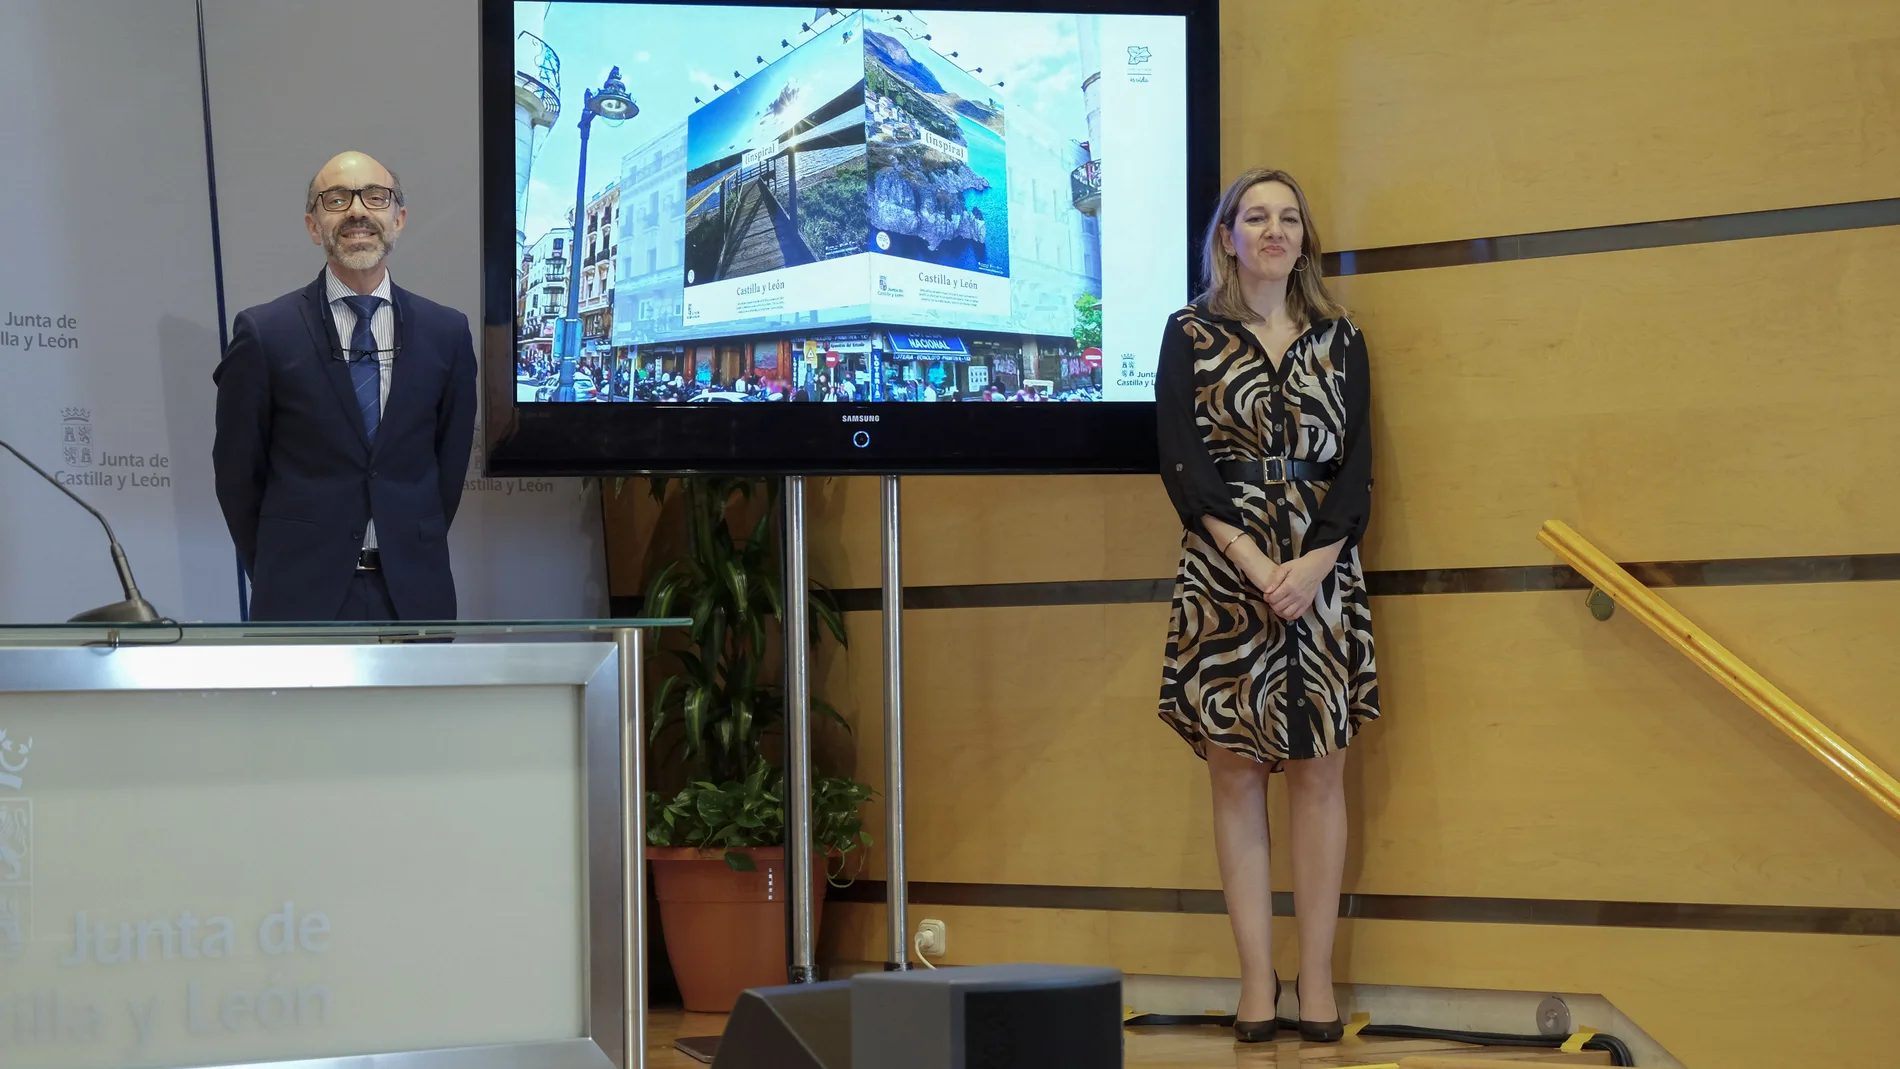 El consejero de Cultura y Turismo, Javier Ortega, y la directora general de Turismo, Estrella Torrecilla, presentan la campaña promocional